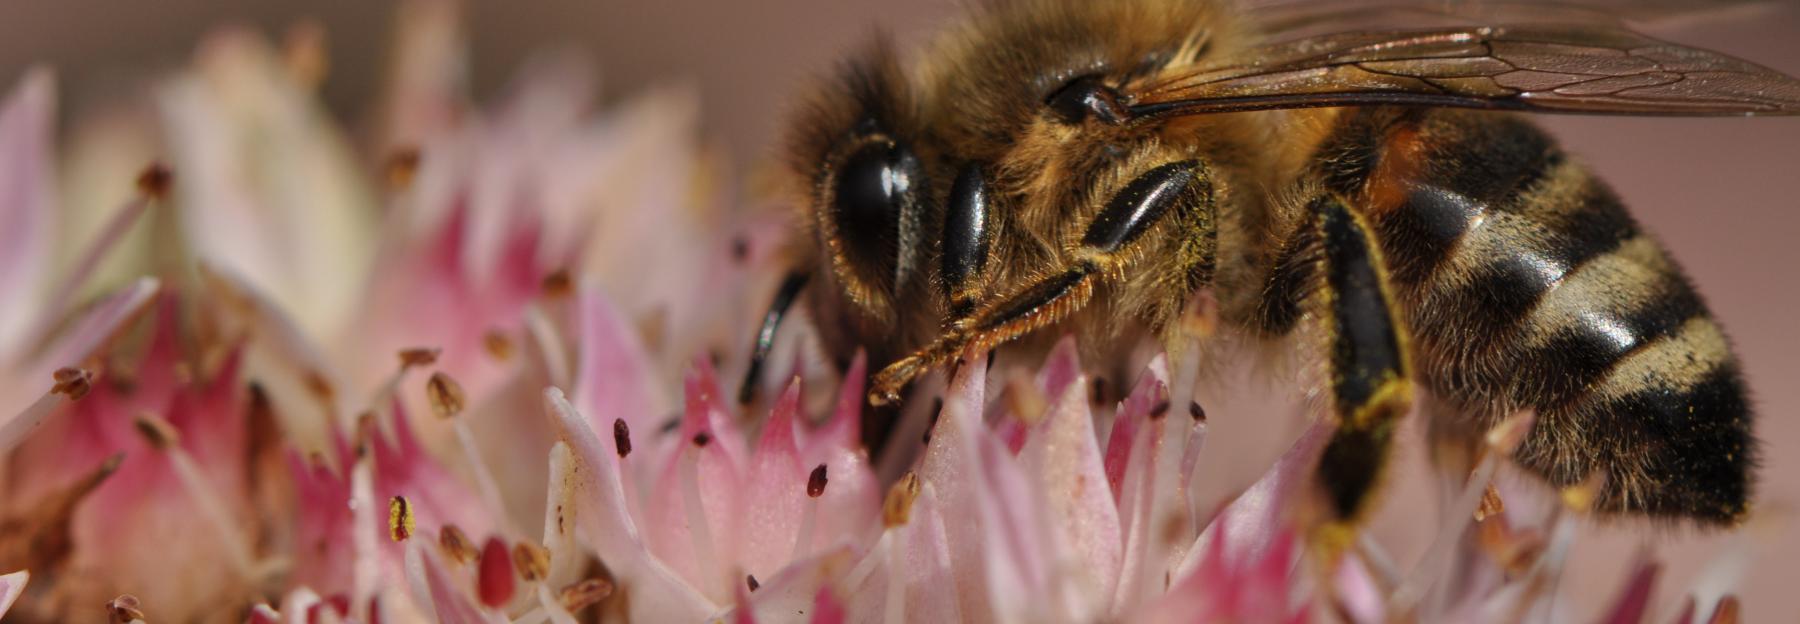 Honigbiene bei der Nektarsuche